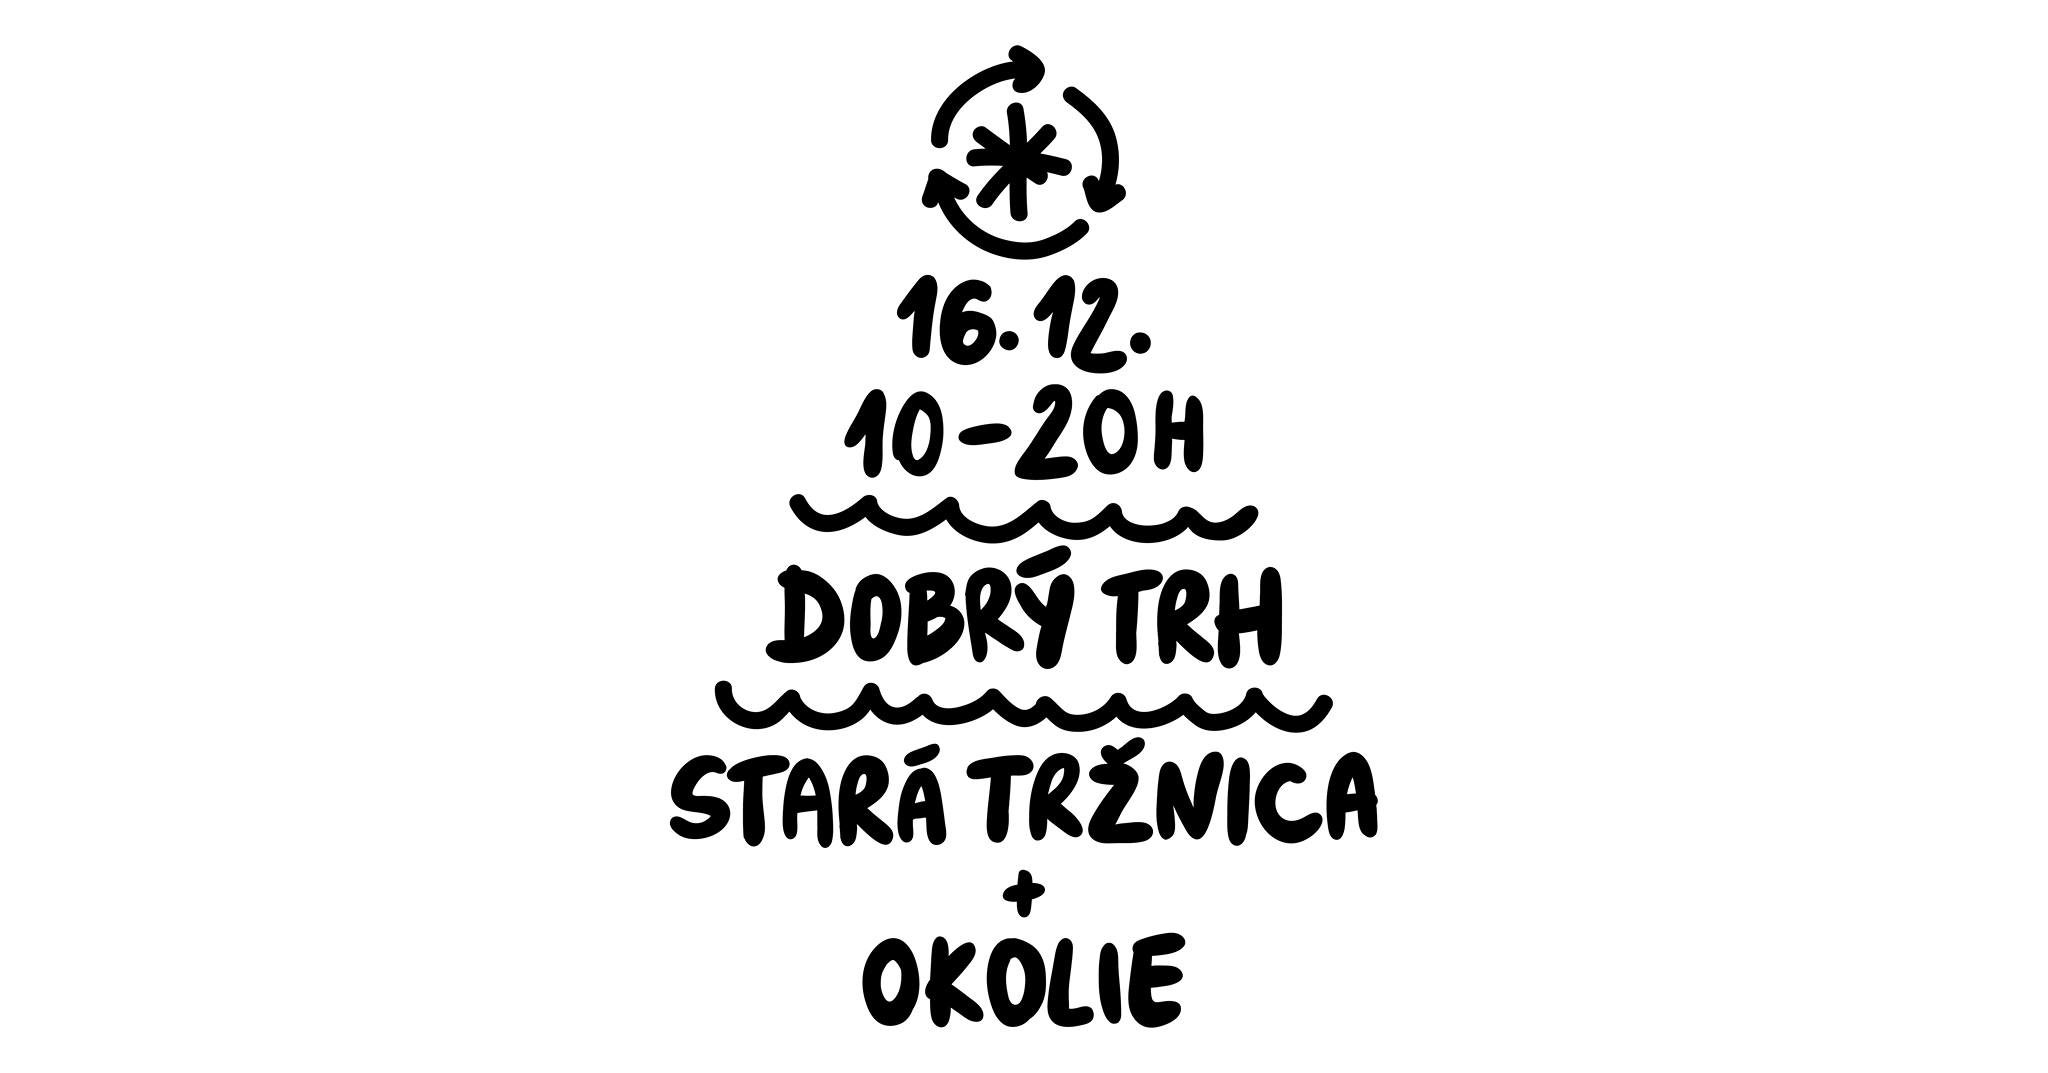 Dobr trh Bratislava 2017 - Star trnica